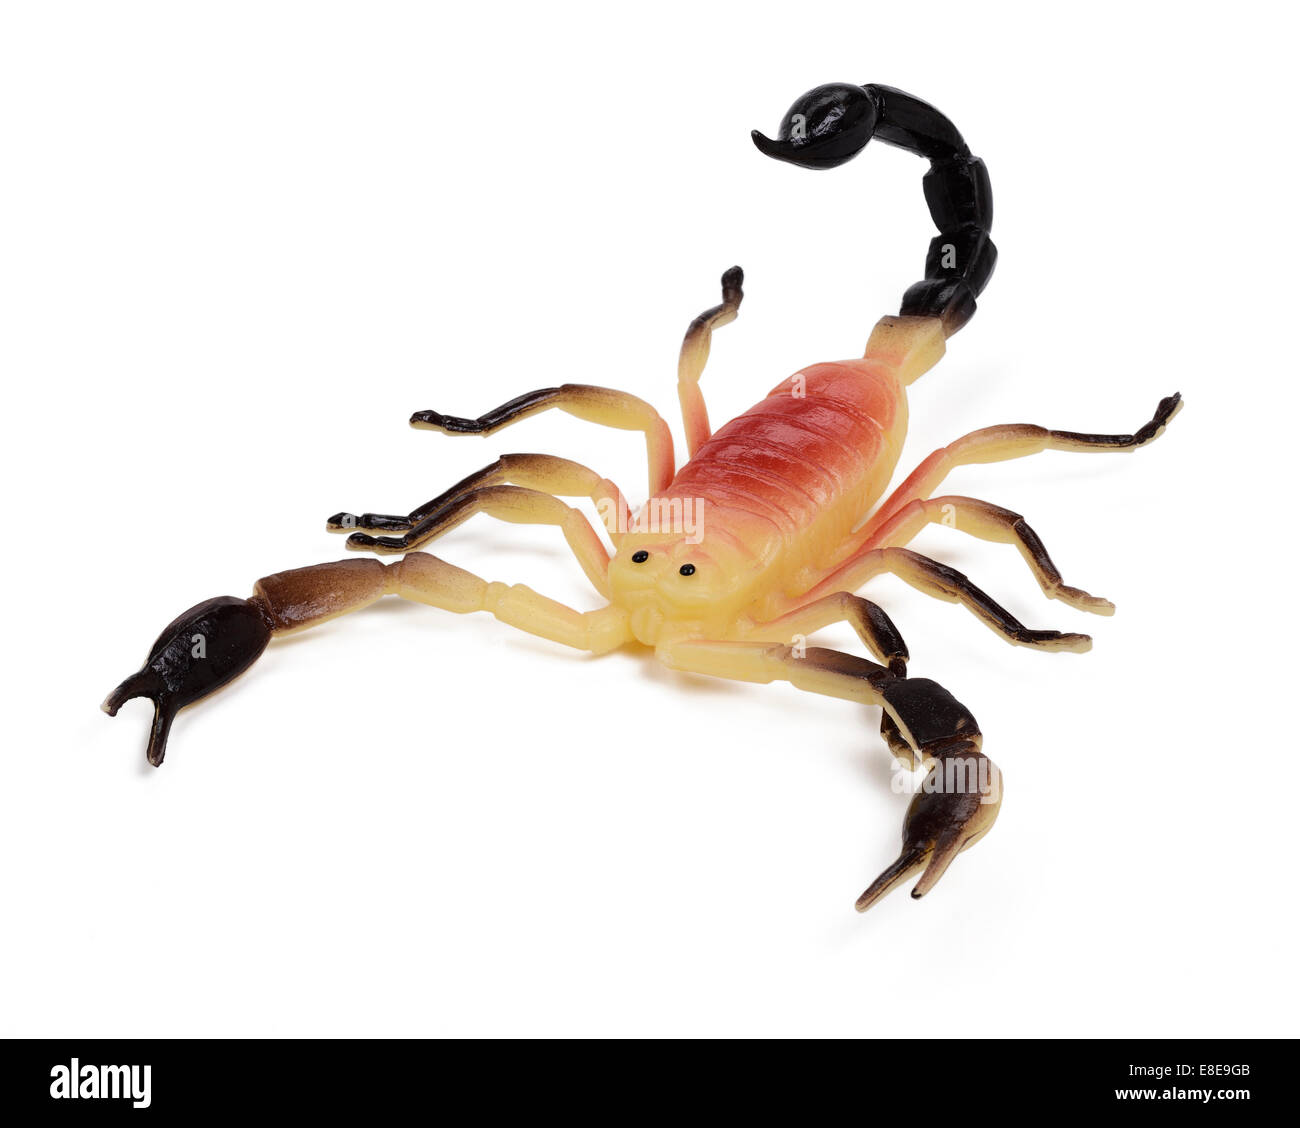 Scorpion jouet en plastique Banque D'Images